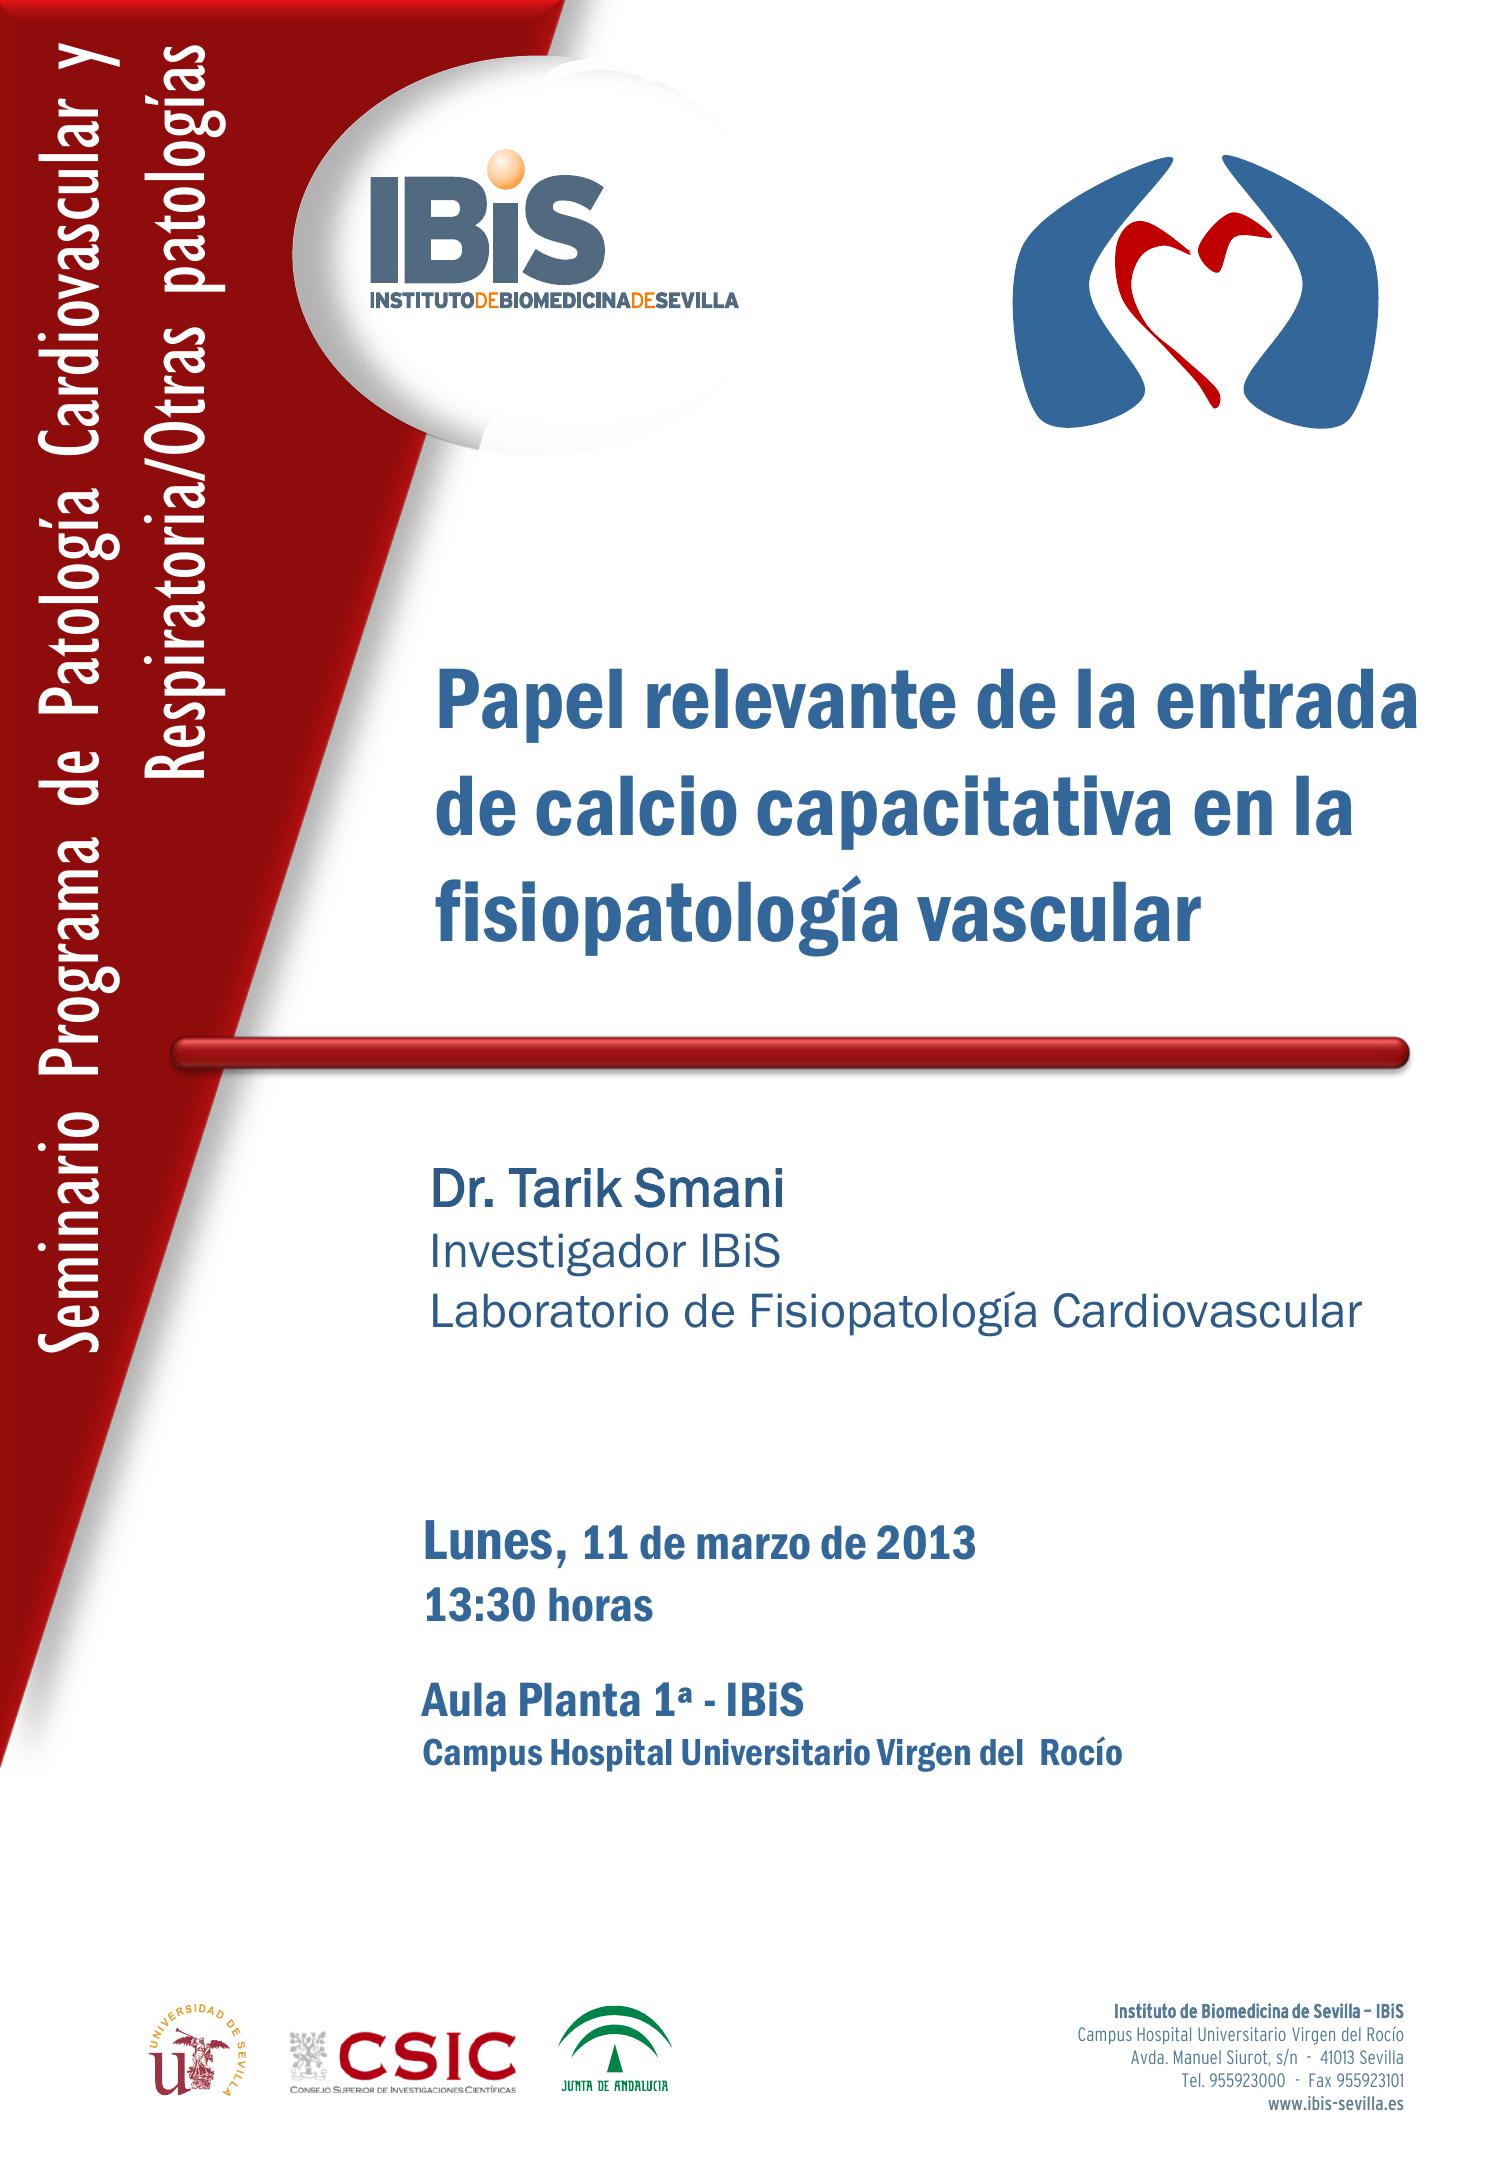 Poster: Papel relevante de la entrada de calcio capacitativa en la fisiopatología vascular.